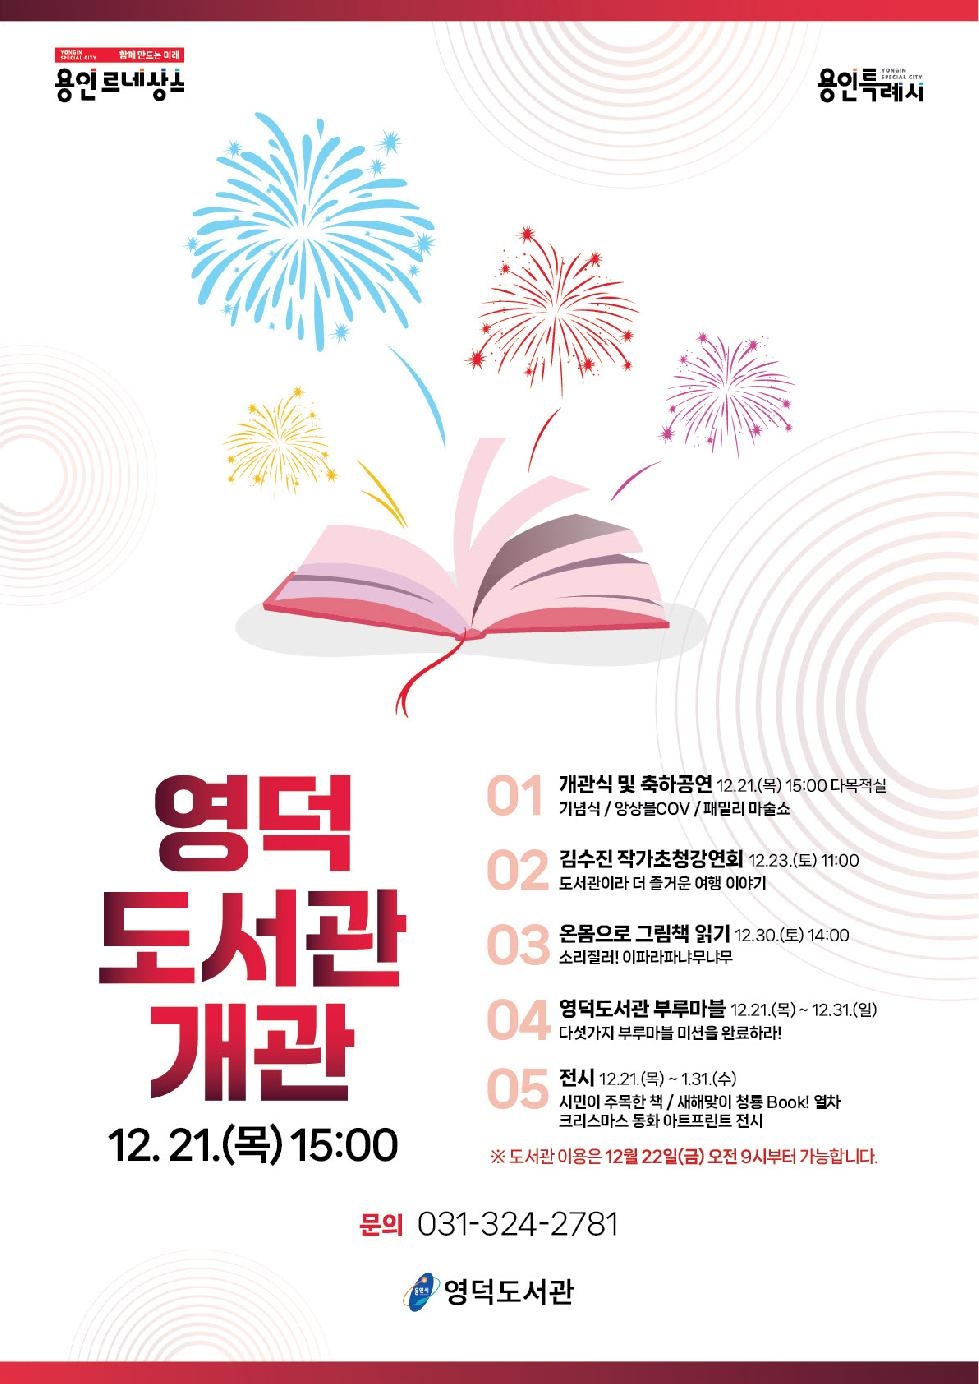 용인시 21일 개관 앞둔 영덕도서관 다양한 독서.문화 프로그램 운영